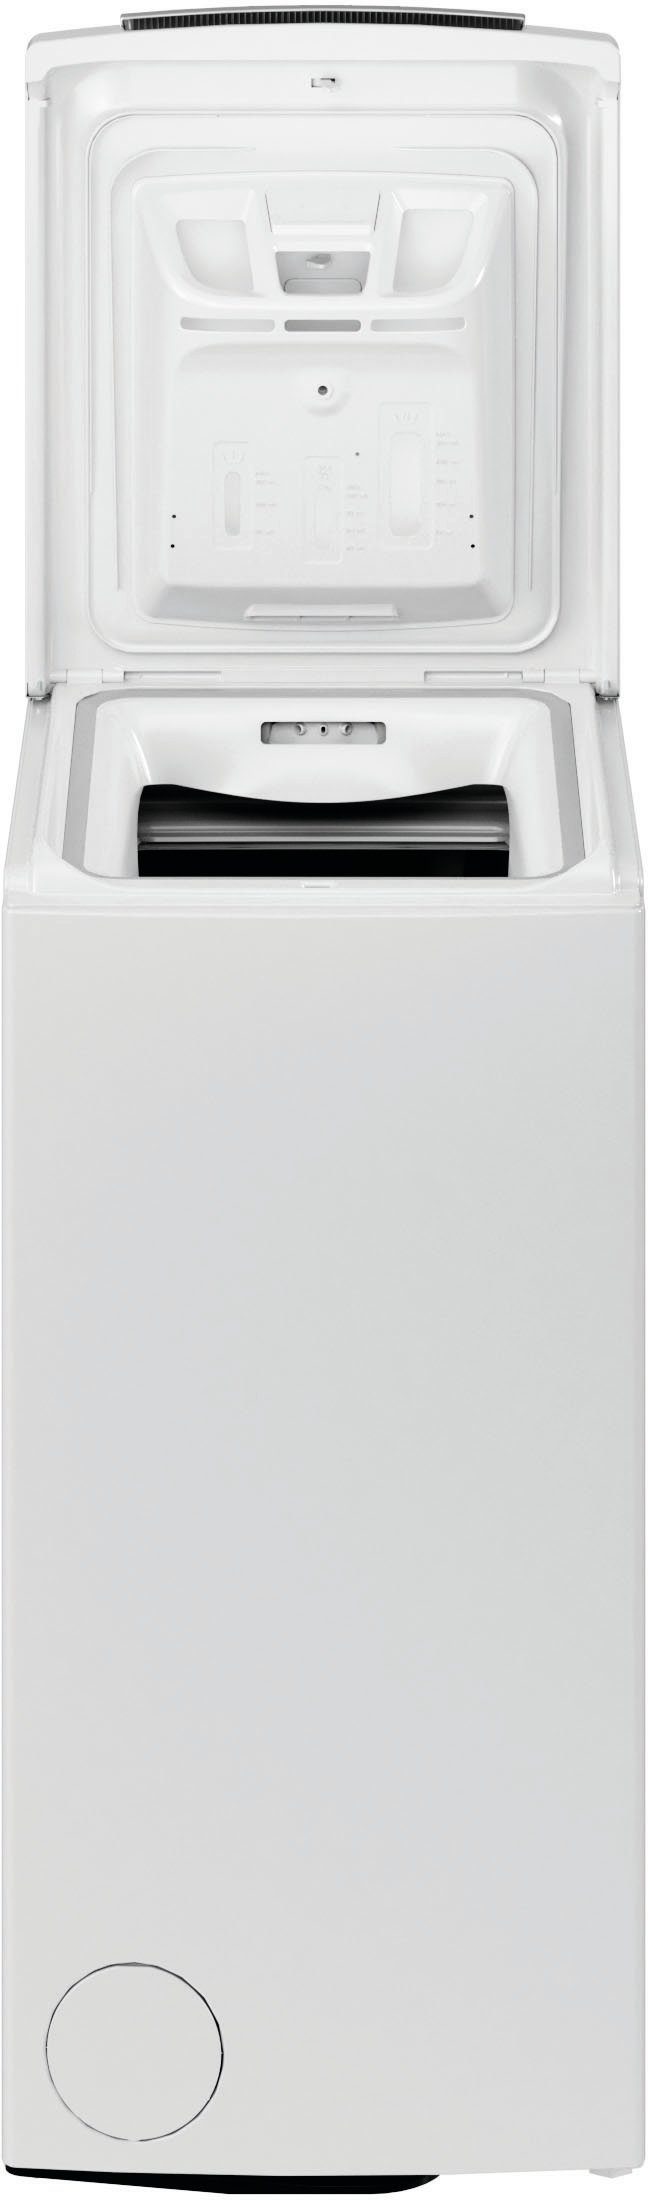 BAUKNECHT Waschmaschine Toplader WMT U/min, kg, 4 Jahre CC, 6,5 Herstellergarantie 1200 6513